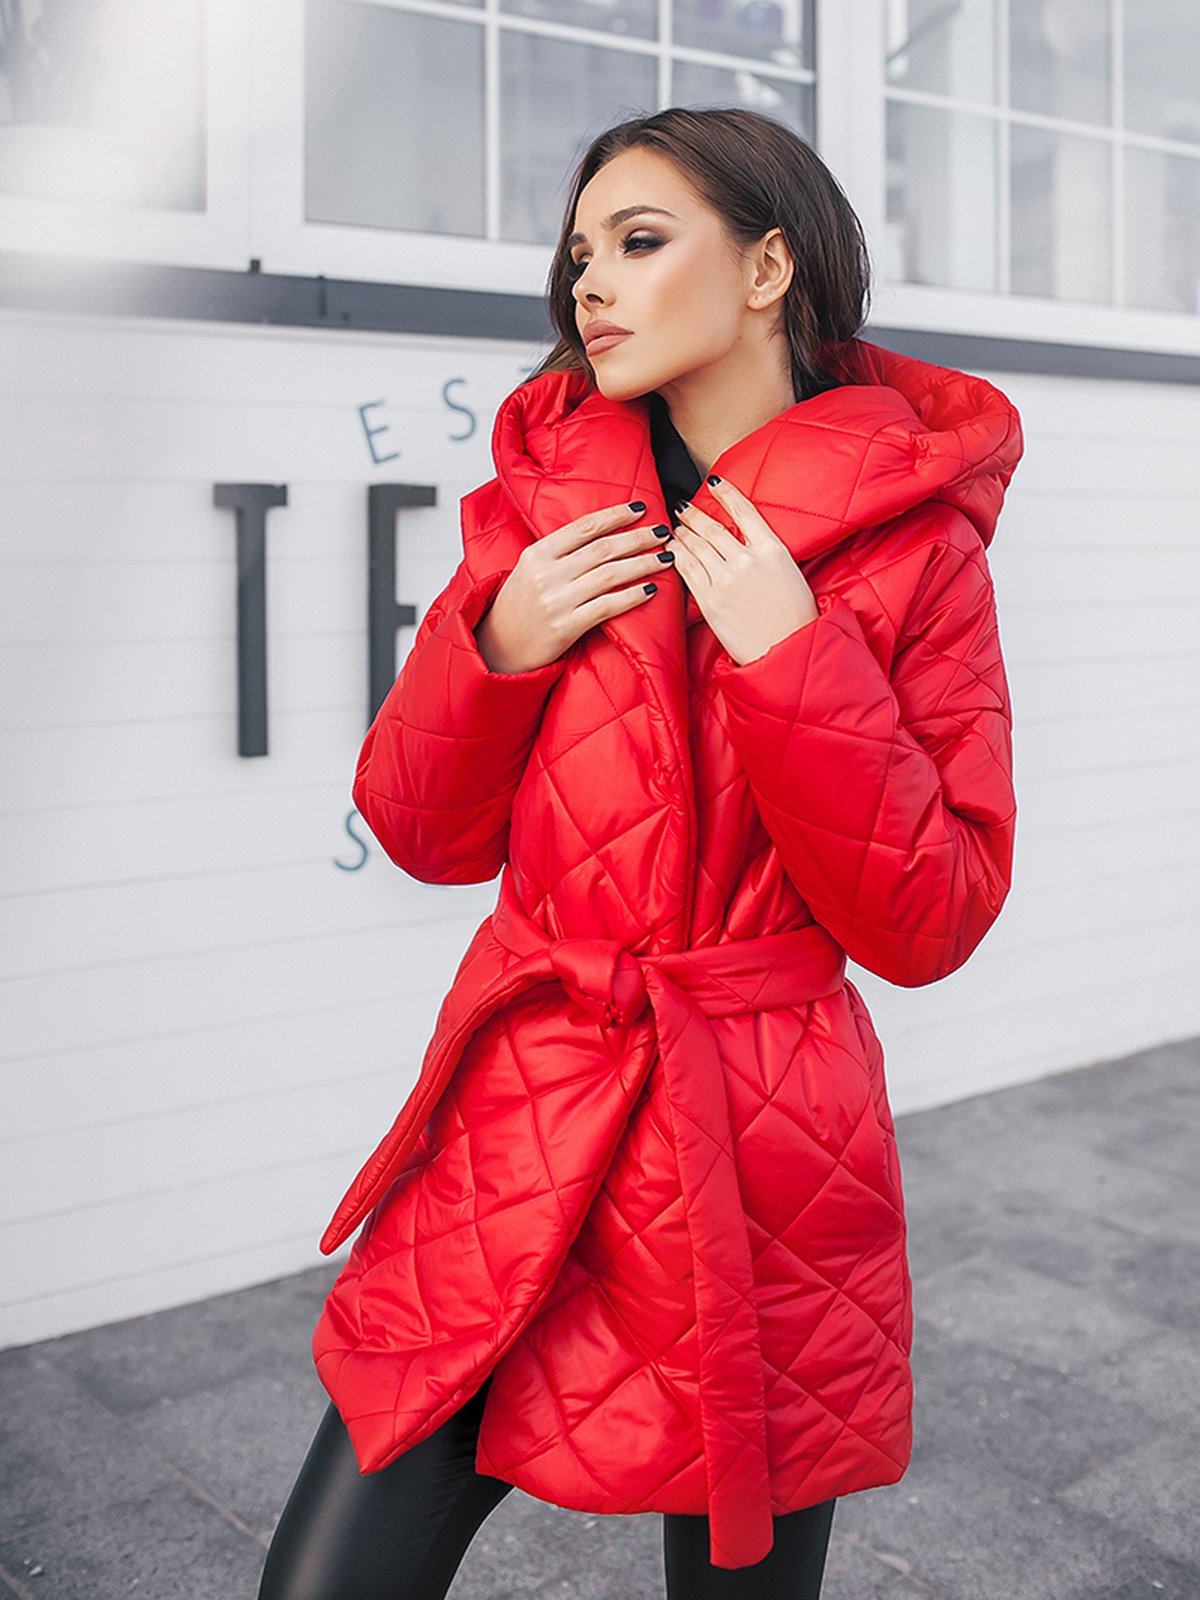 Стеганая куртка с поясом. Красная куртка. Красная стеганая куртка. Красная стеганая куртка женская. Куртка красная с поясом женская.